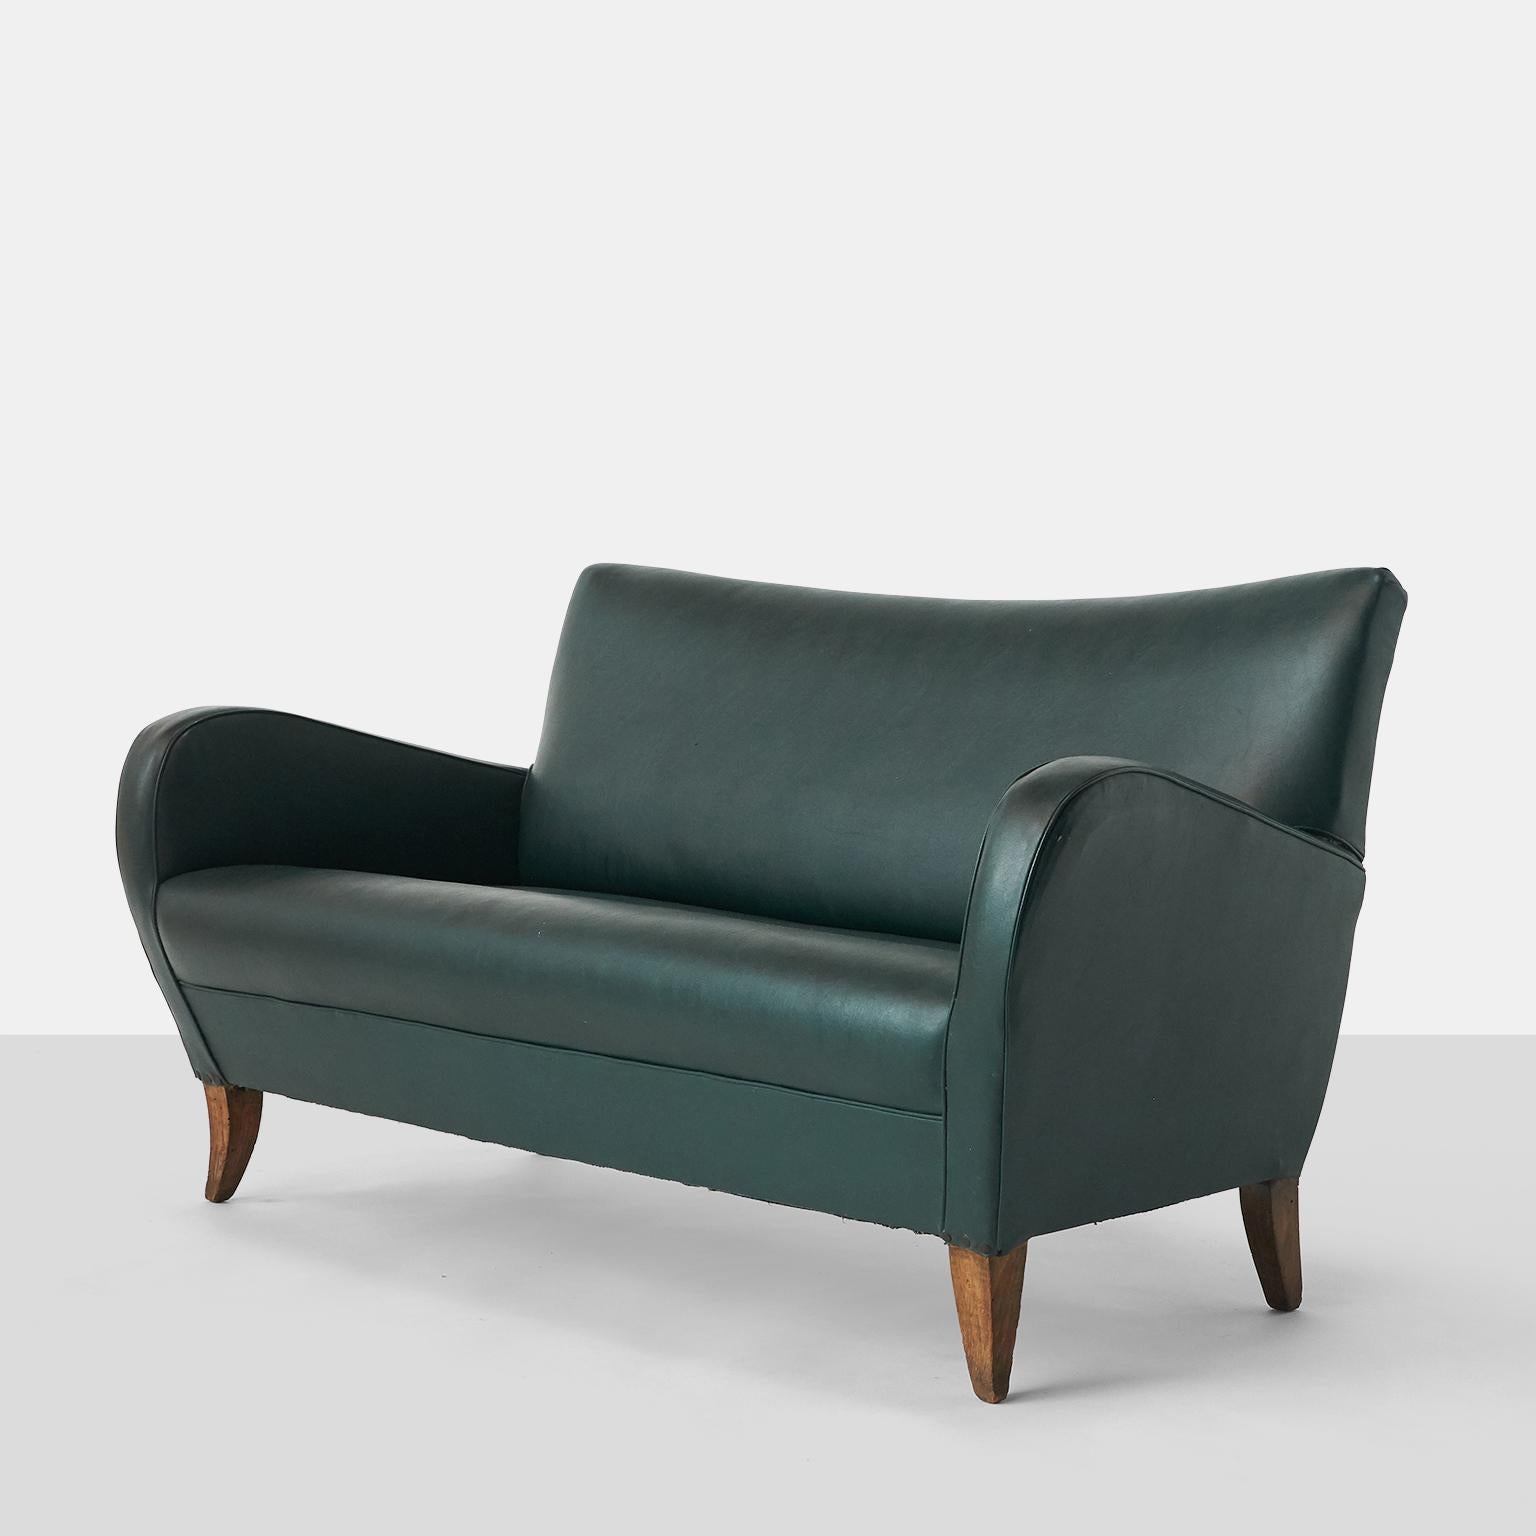 Ein kleines Sofa, das in den frühen 1950er Jahren von Malatesta und Masson in Rom hergestellt wurde. Die geschwungenen Arme sorgen für einen hohen Sitzkomfort.

